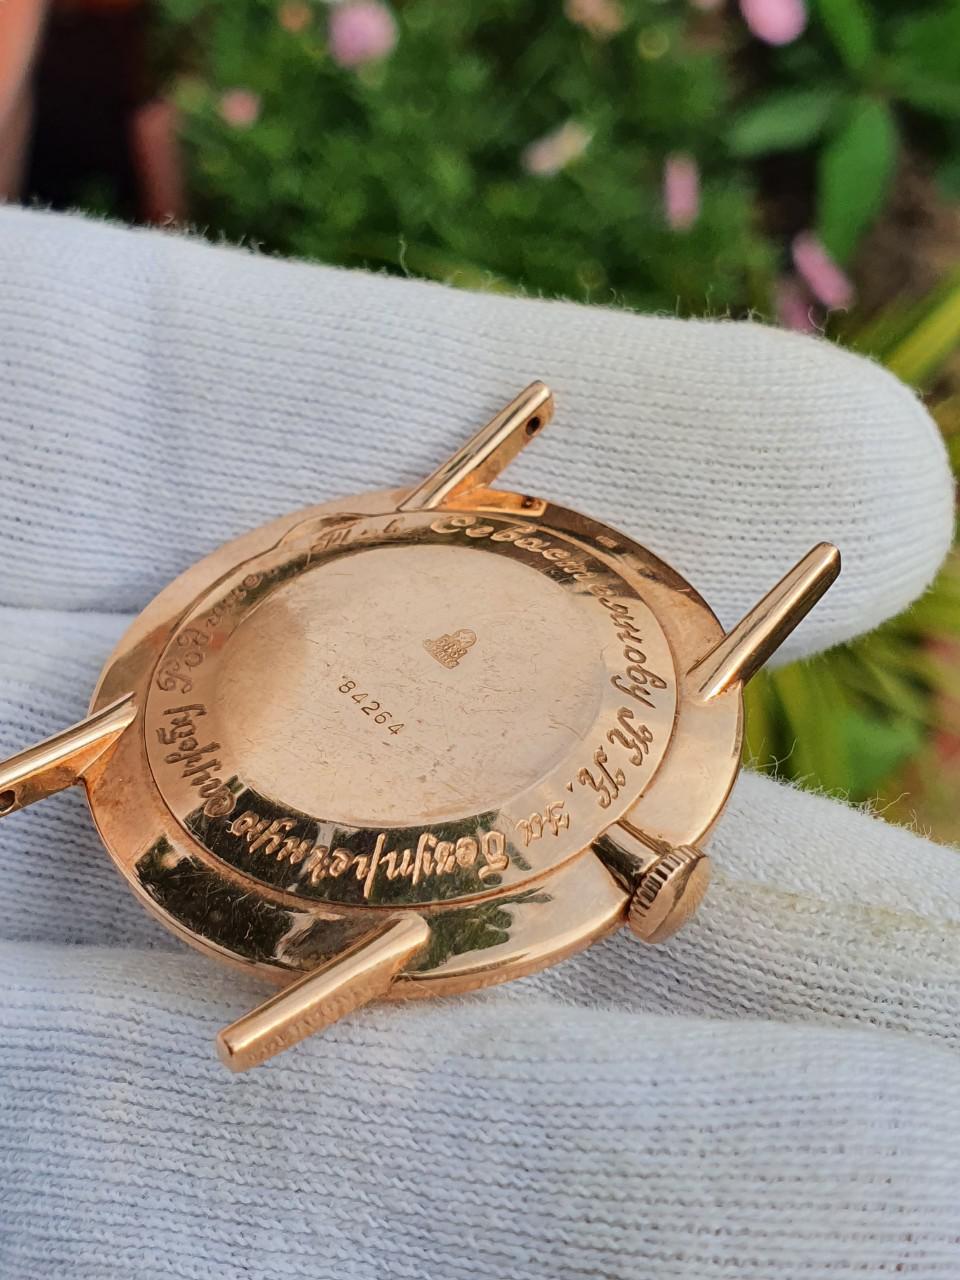 Đồng hồ cổ Luch 23 jewels vàng đúc nguyên khối máy vàng